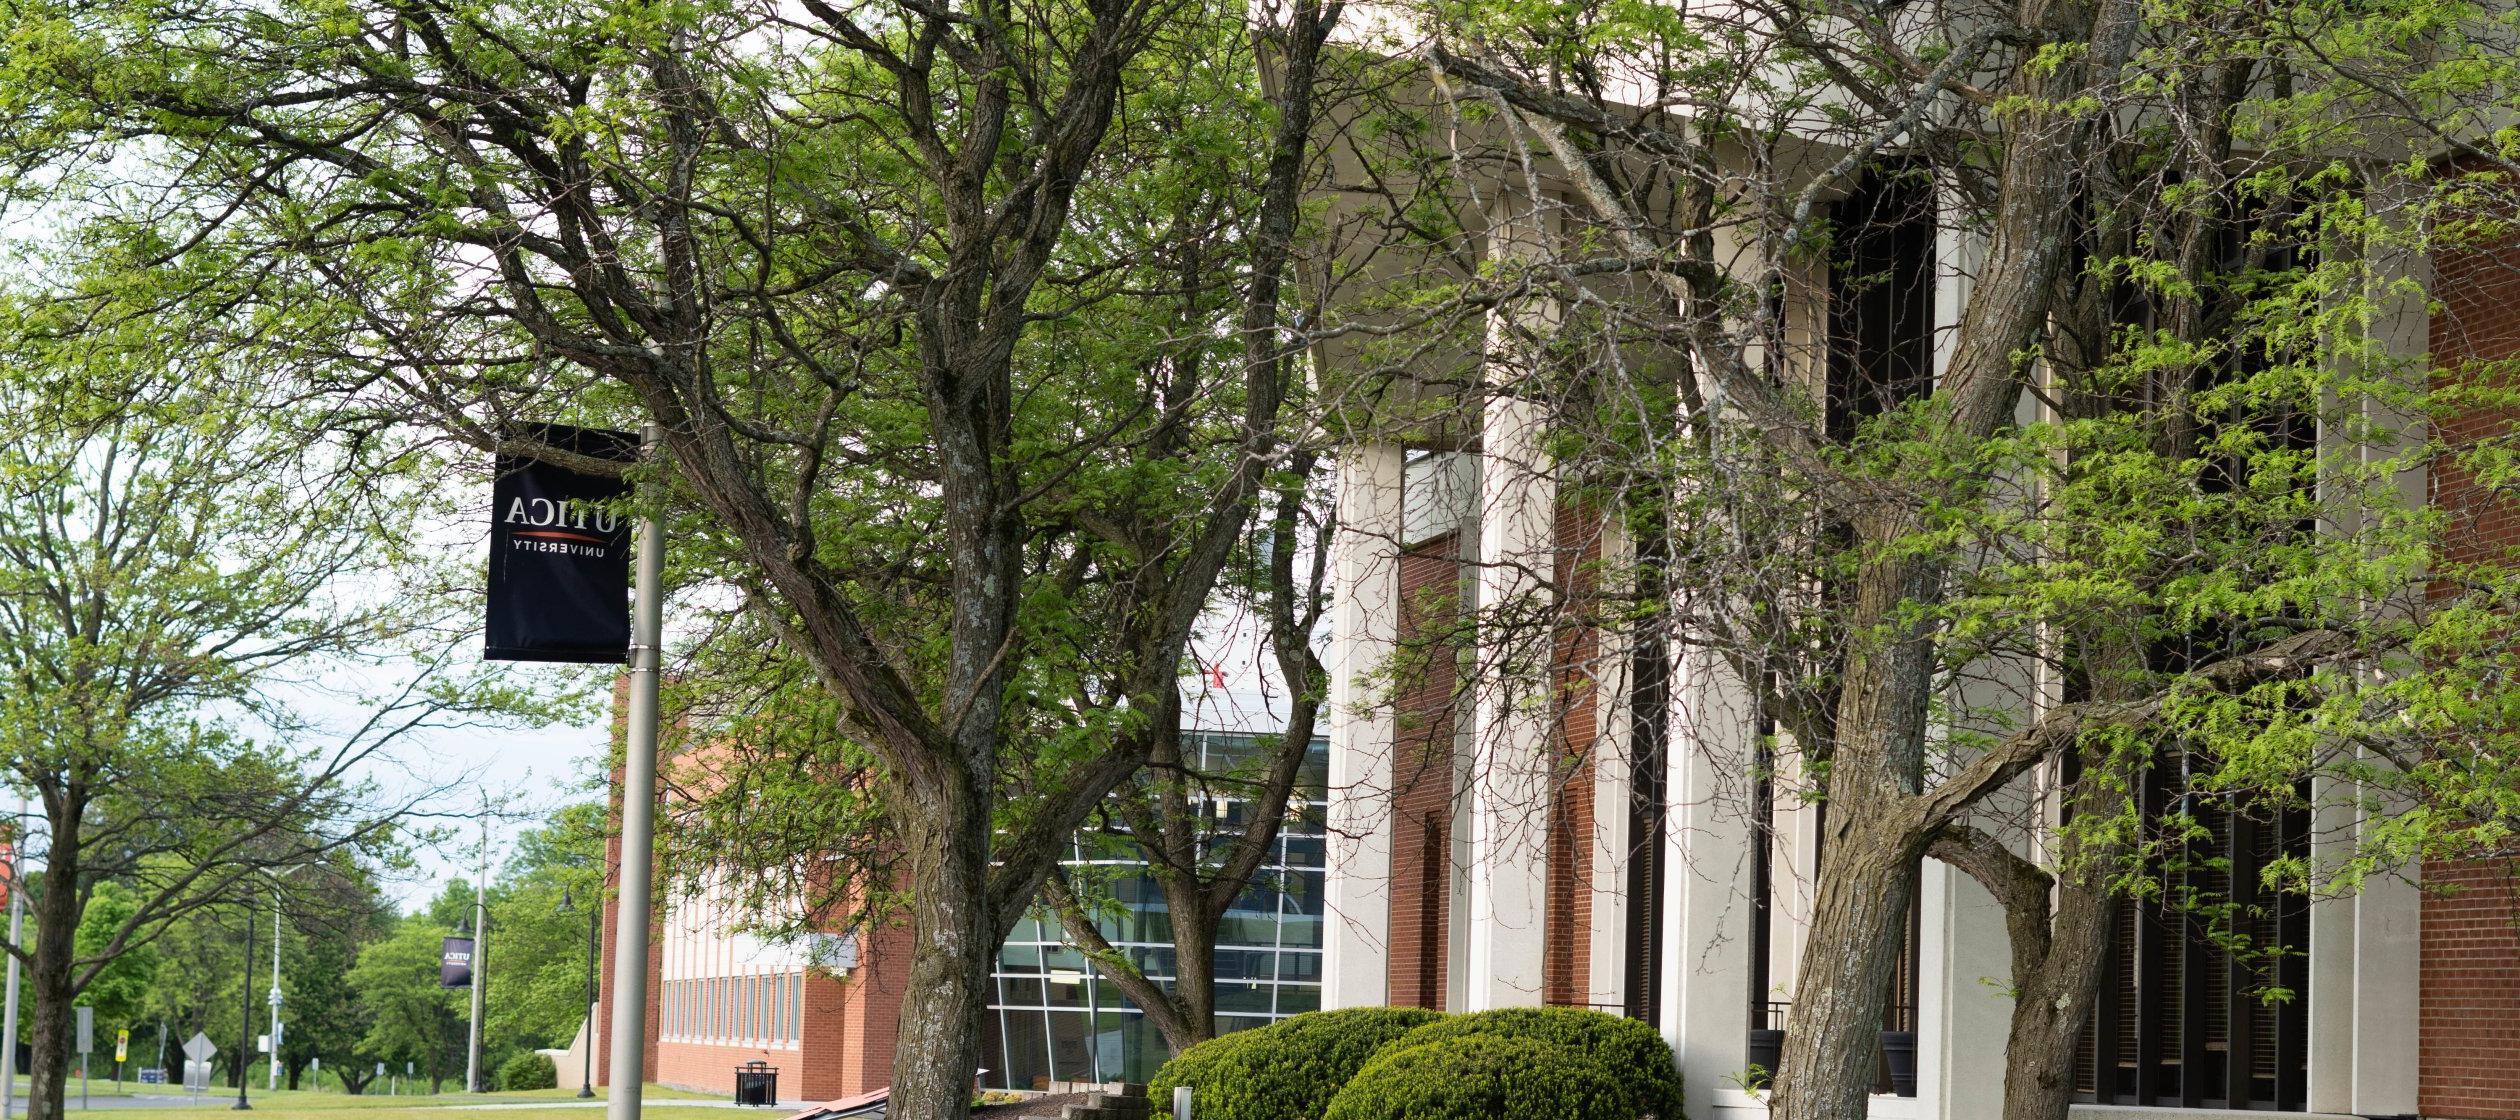 两棵树, 满是绿叶, 在一个温暖的日子里，利记sbo的横幅矗立在甘尼特图书馆前，背后是科学中心.